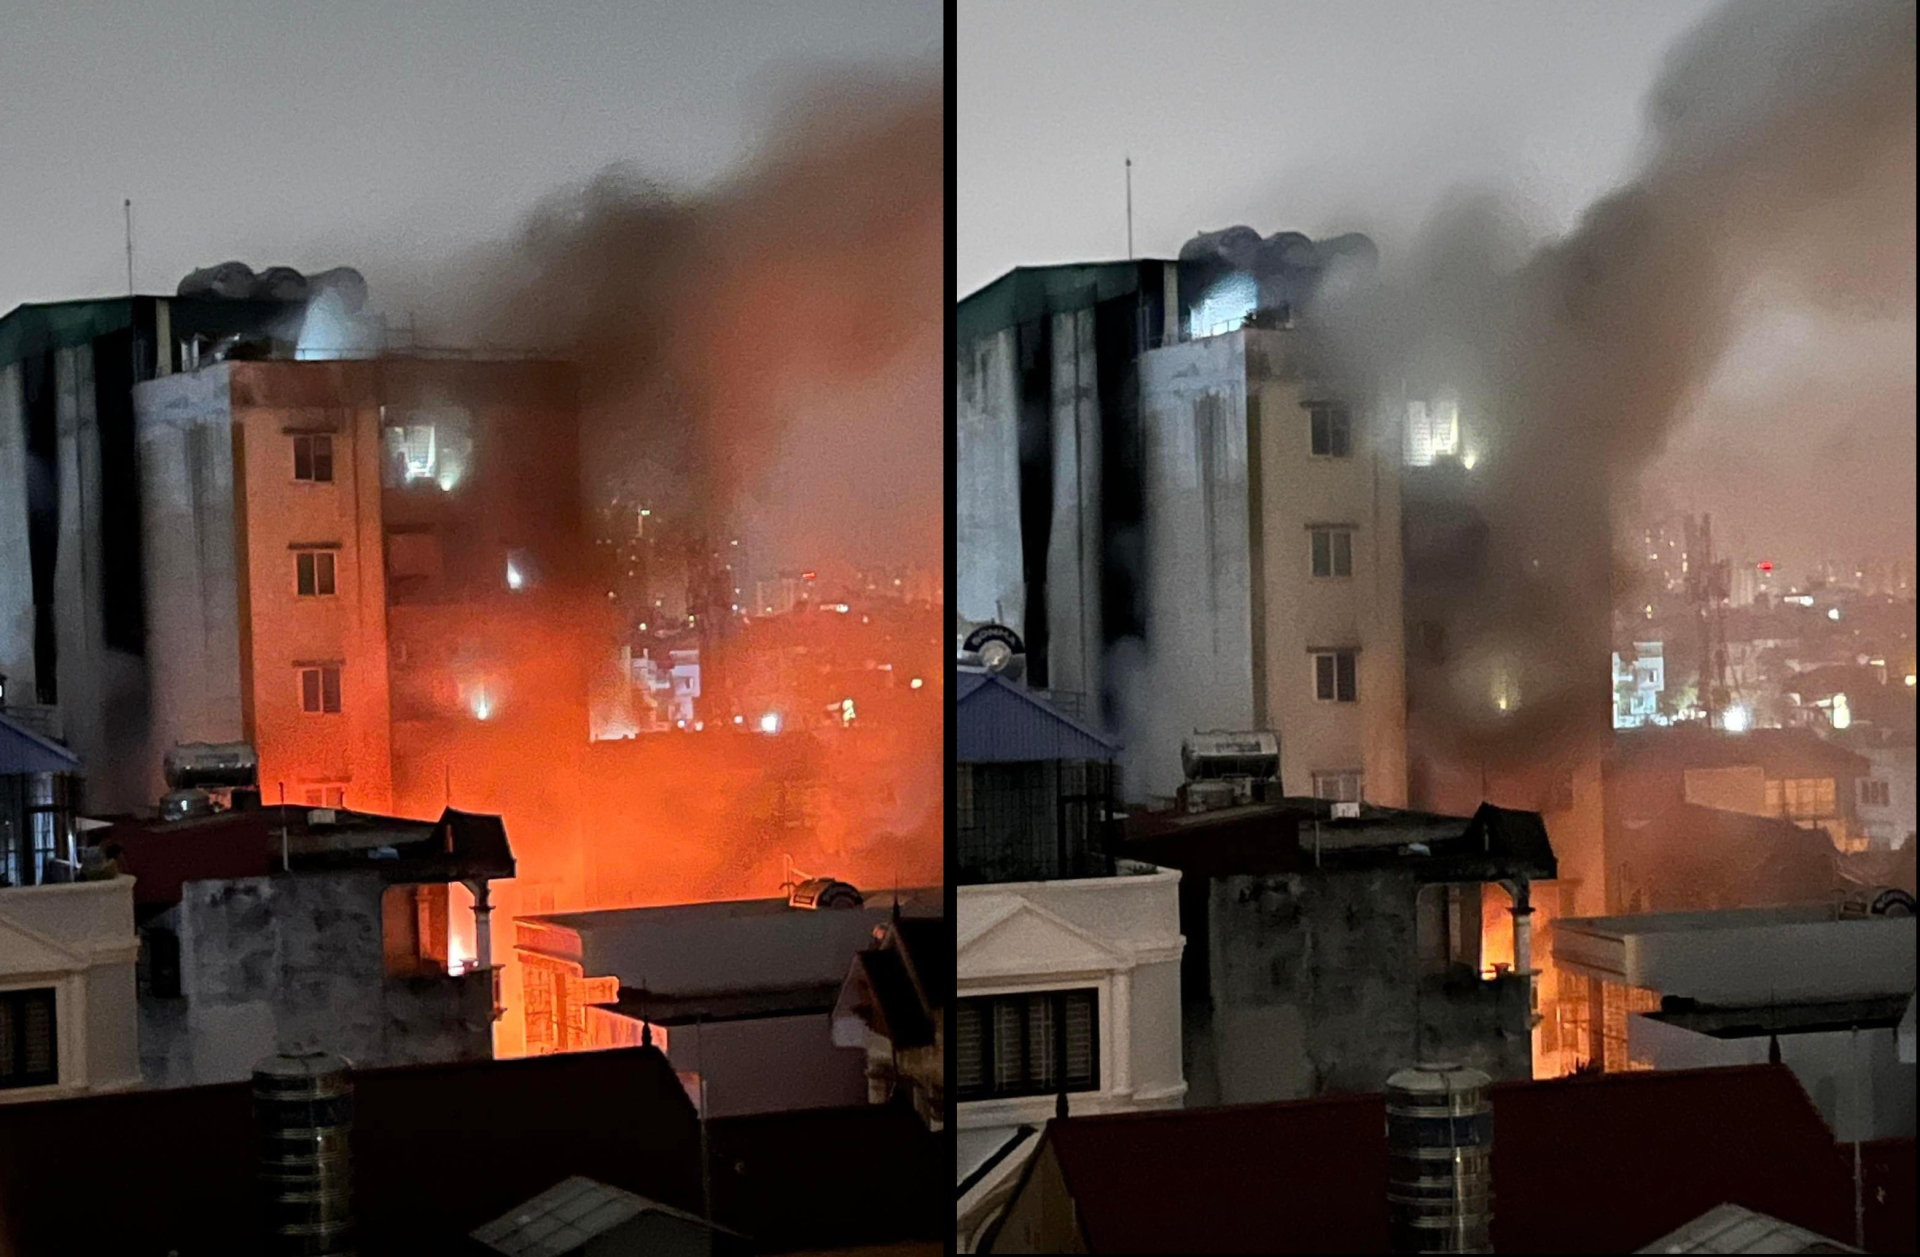 Xót xa hoàn cảnh bảo vệ chung cư mini Hà Nội bị cháy: Mất 4 người thân trong vụ cháy, phải ở nhờ người quen - ảnh 1